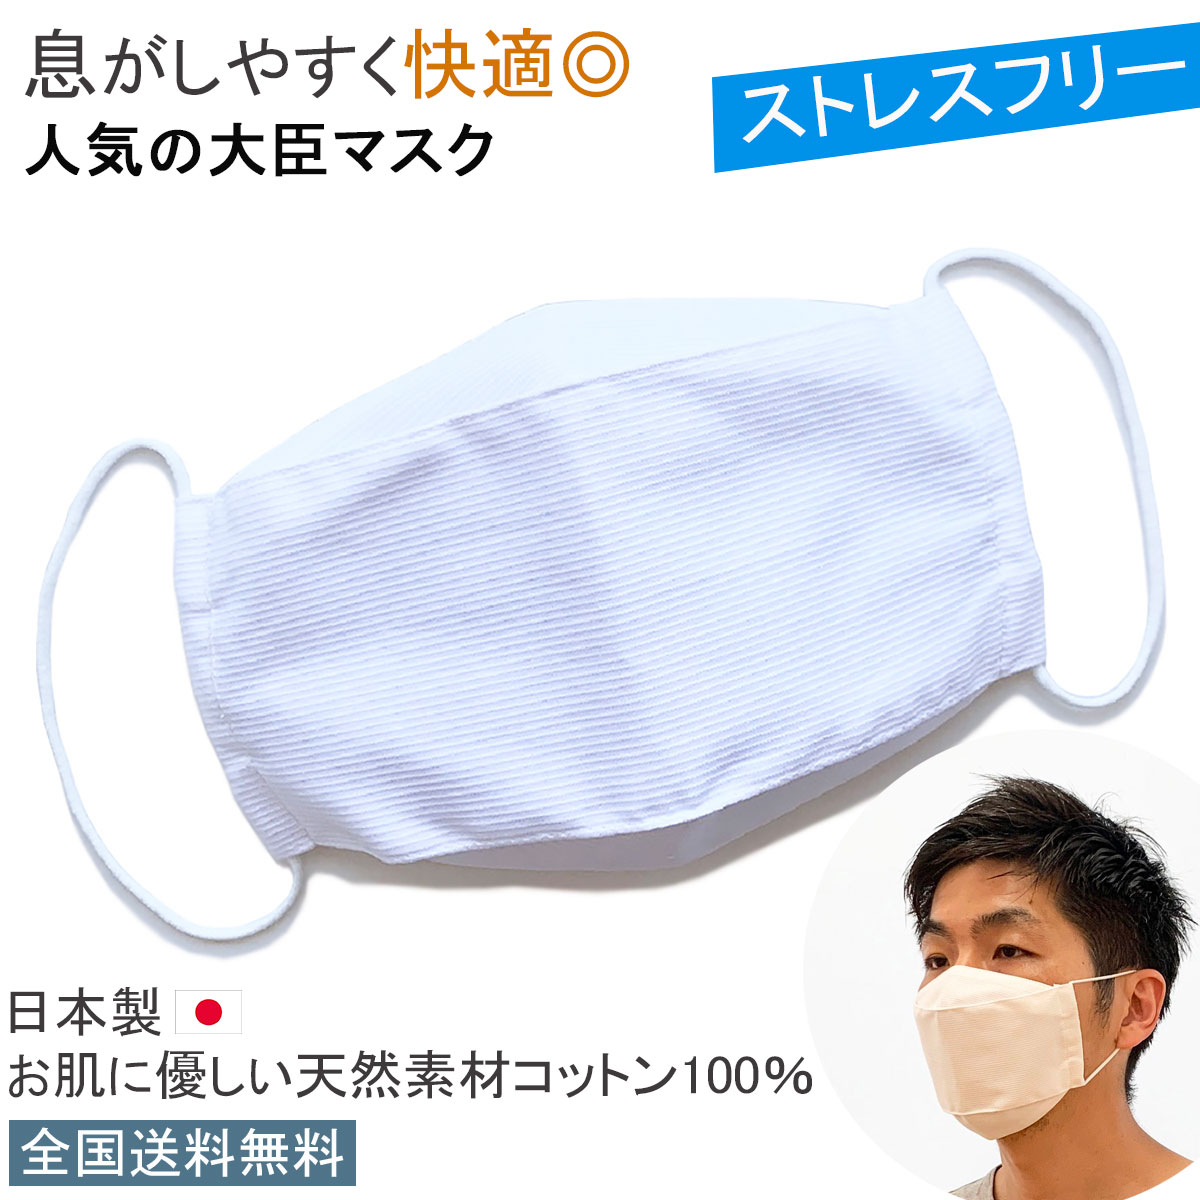 不織布マスクがつらい方にもおすすめです 天然素材のコットン生地でお肌にも優しい 立体的に仕上げた日本製 布マスクです 洗って繰り返し使用いただけます 日本製 布マスク 大臣マスク 舟形 完売 天然素材 折り返し ビジネスマスク おしゃれ 白 あす楽 送料無料 ストライプ柄 男女兼用 ホワイト WEB限定 立体型マスク 立体マスク Y330